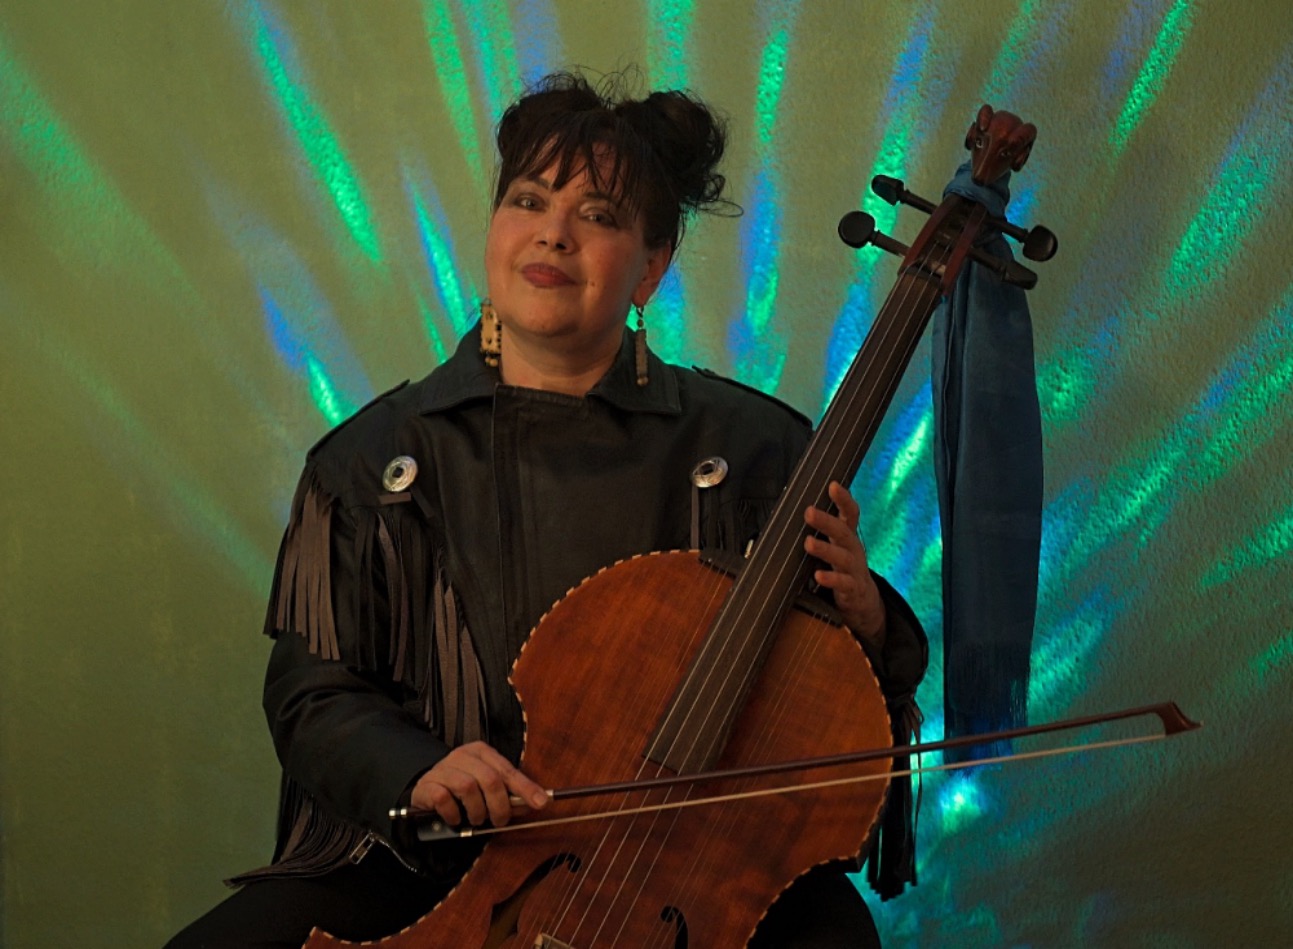 Arjopa mit einem Cello-ähnlichen Instrument